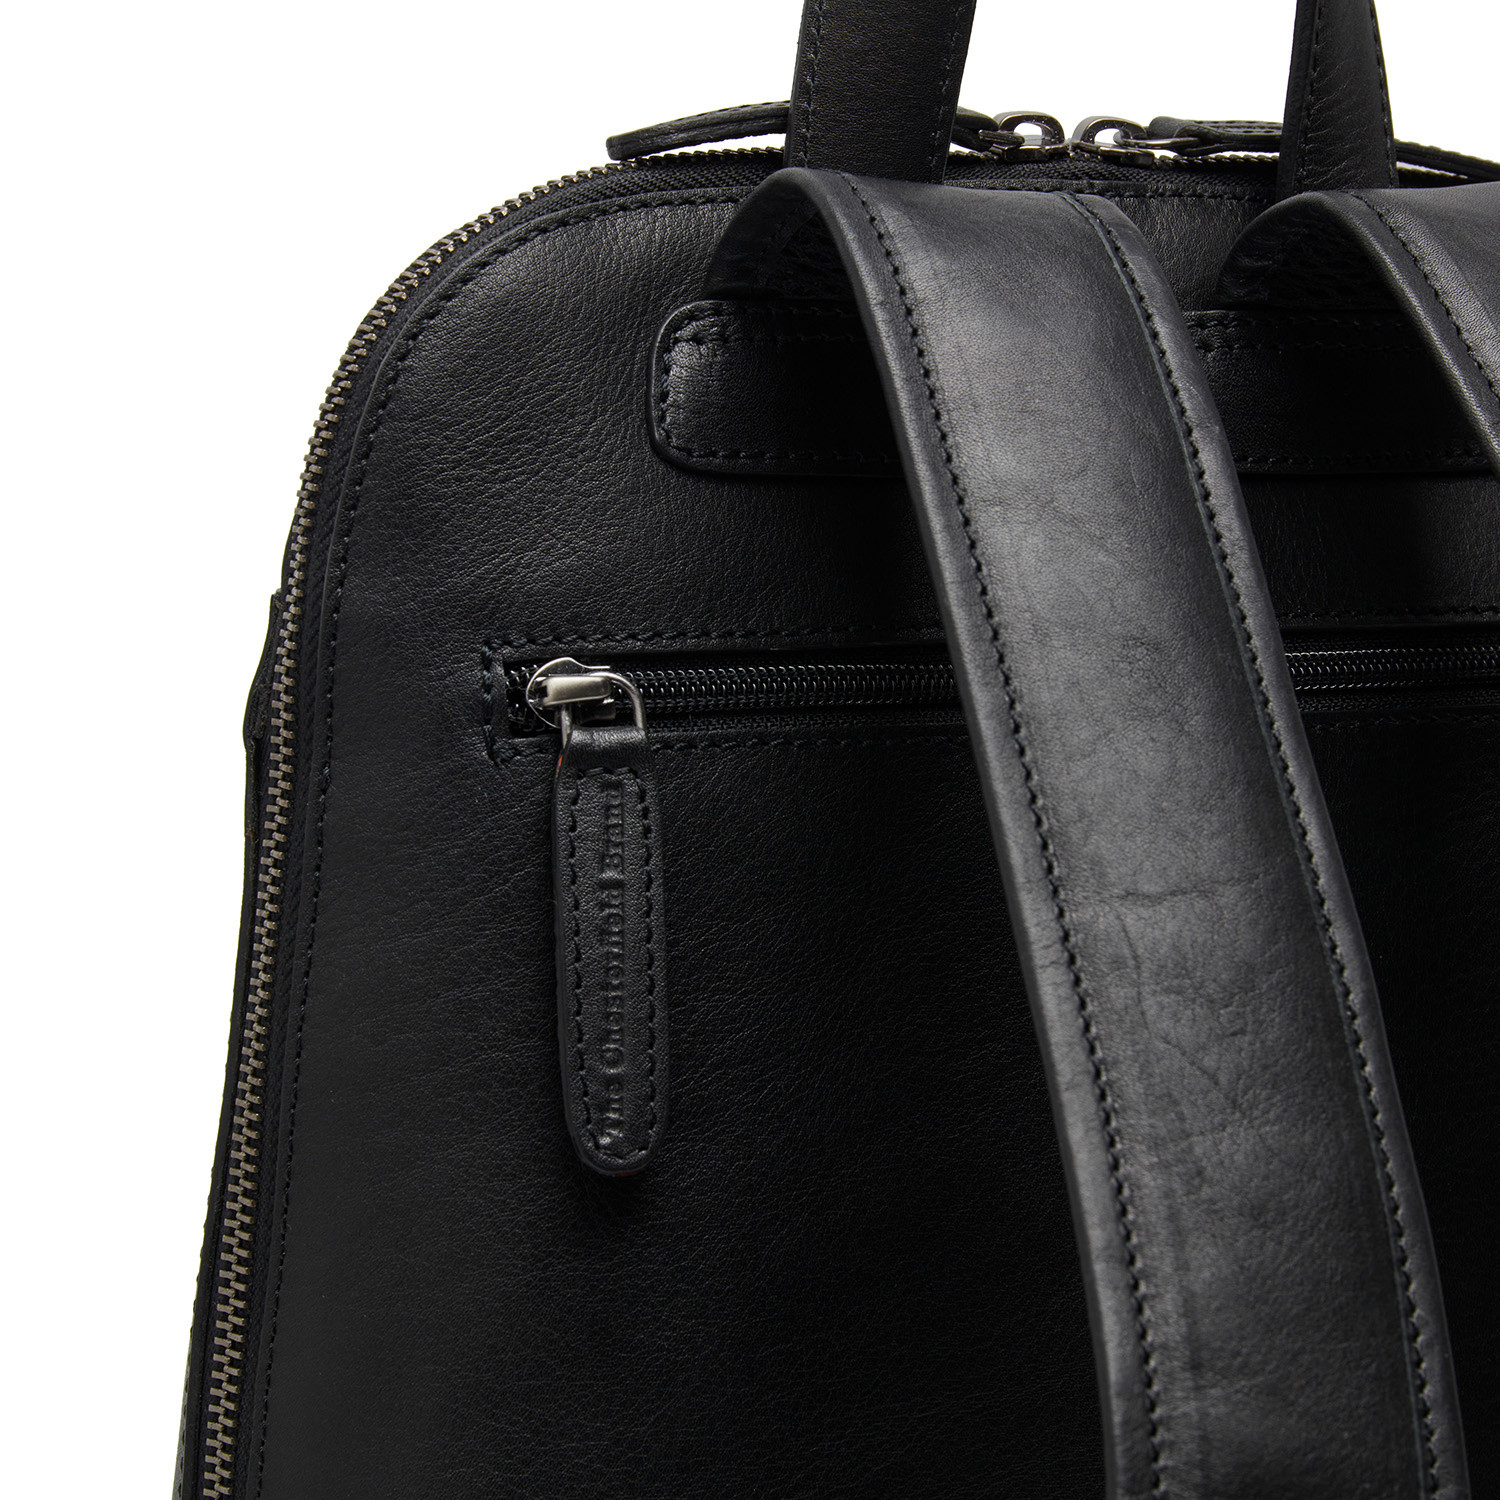 Buy Picard Sholder Black Leather Bag 80.original Made in Germany